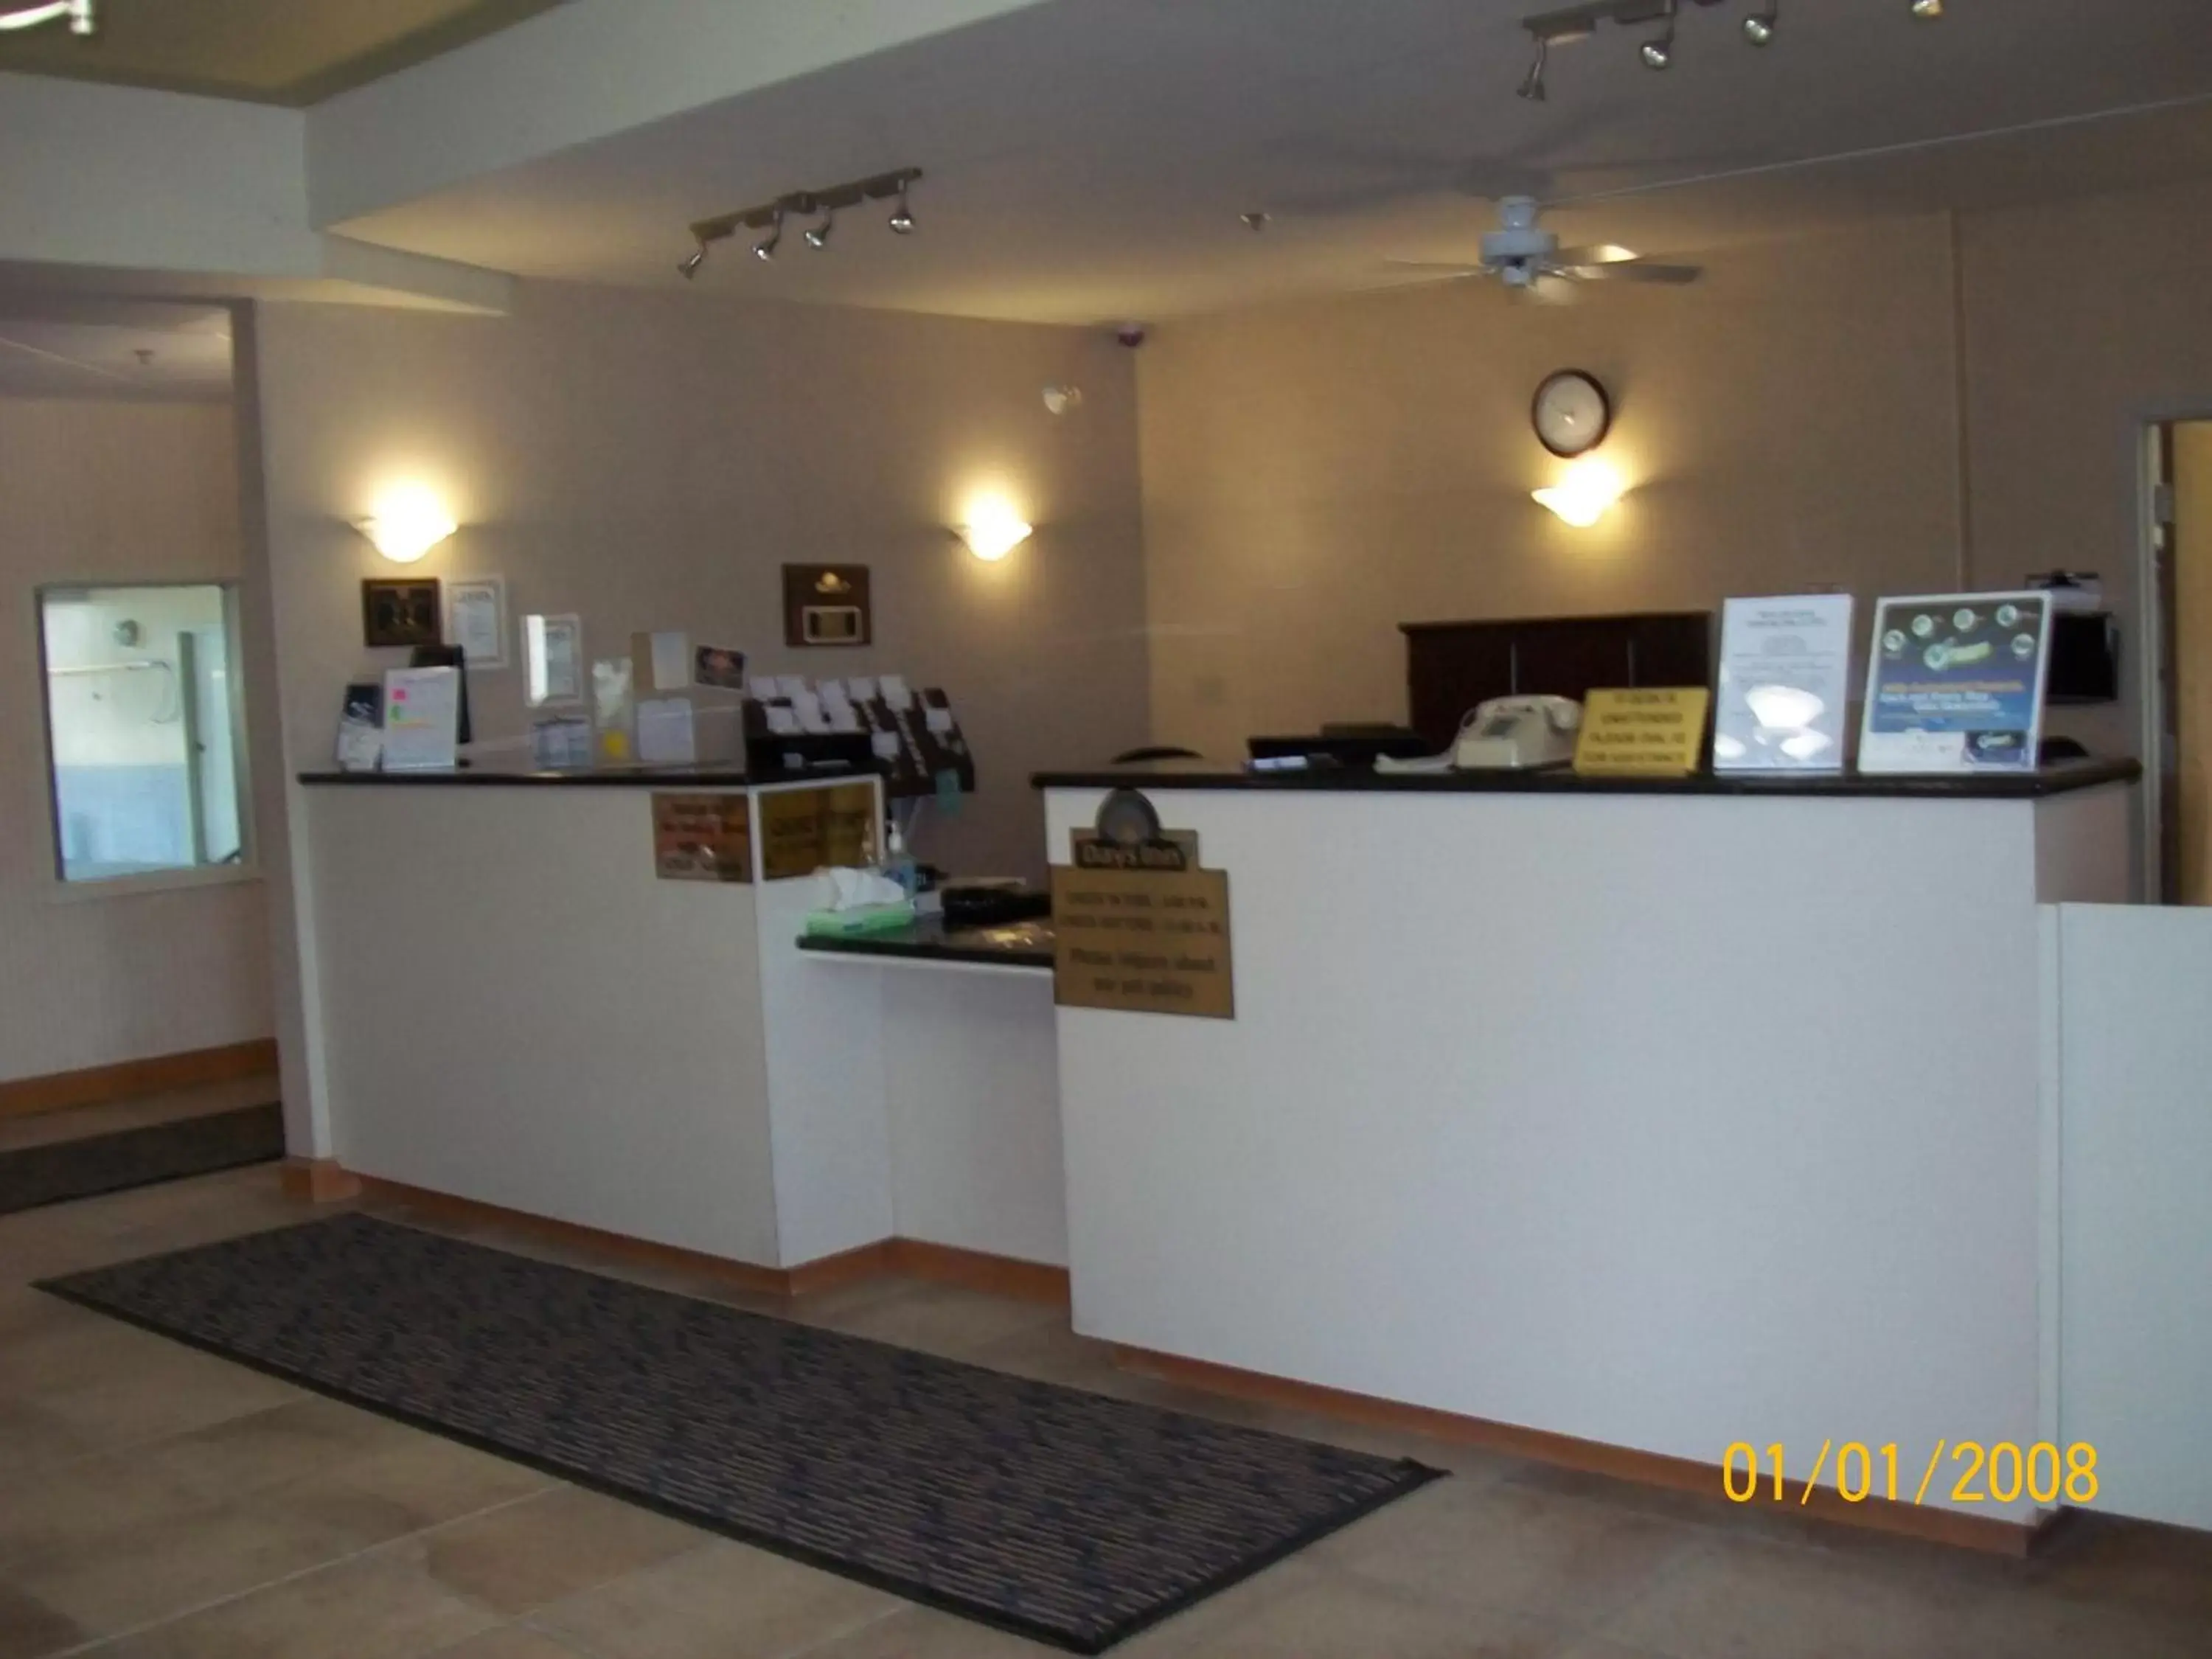 Lobby or reception, Lobby/Reception in Days Inn by Wyndham Moose Jaw